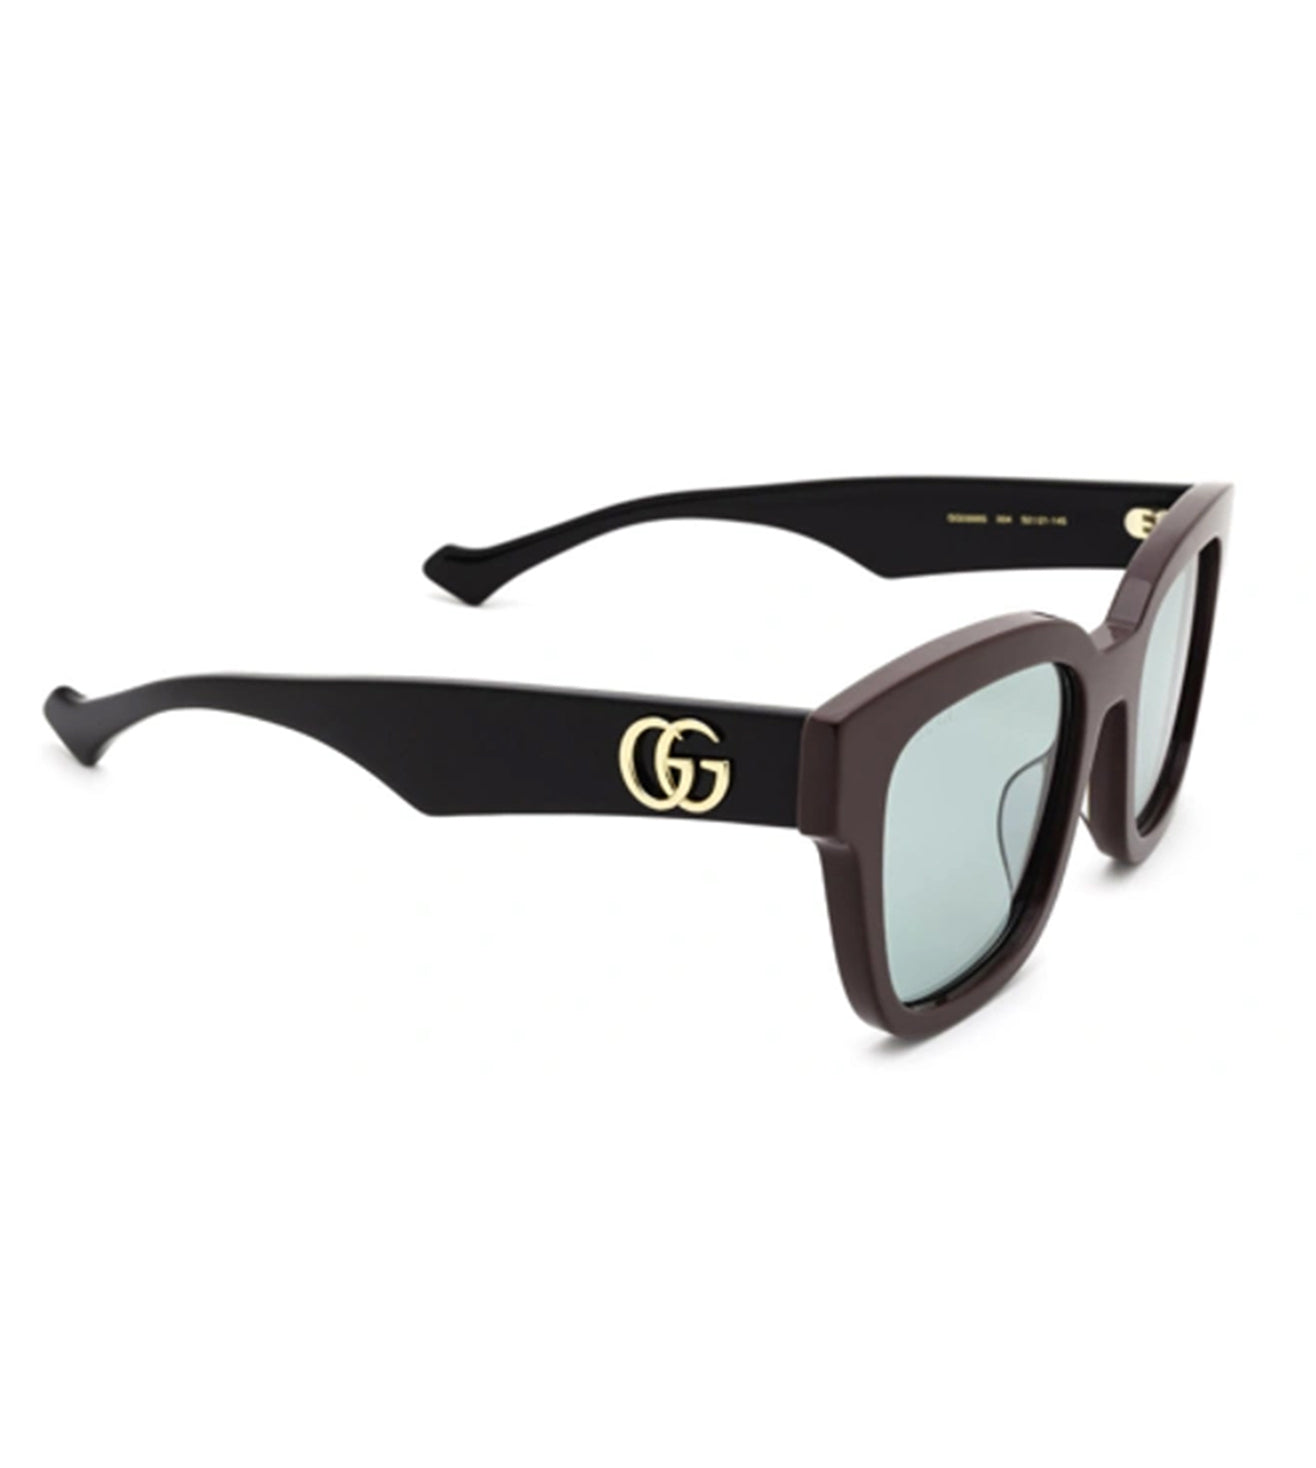 Gucci Women's Green Square Sunglasses